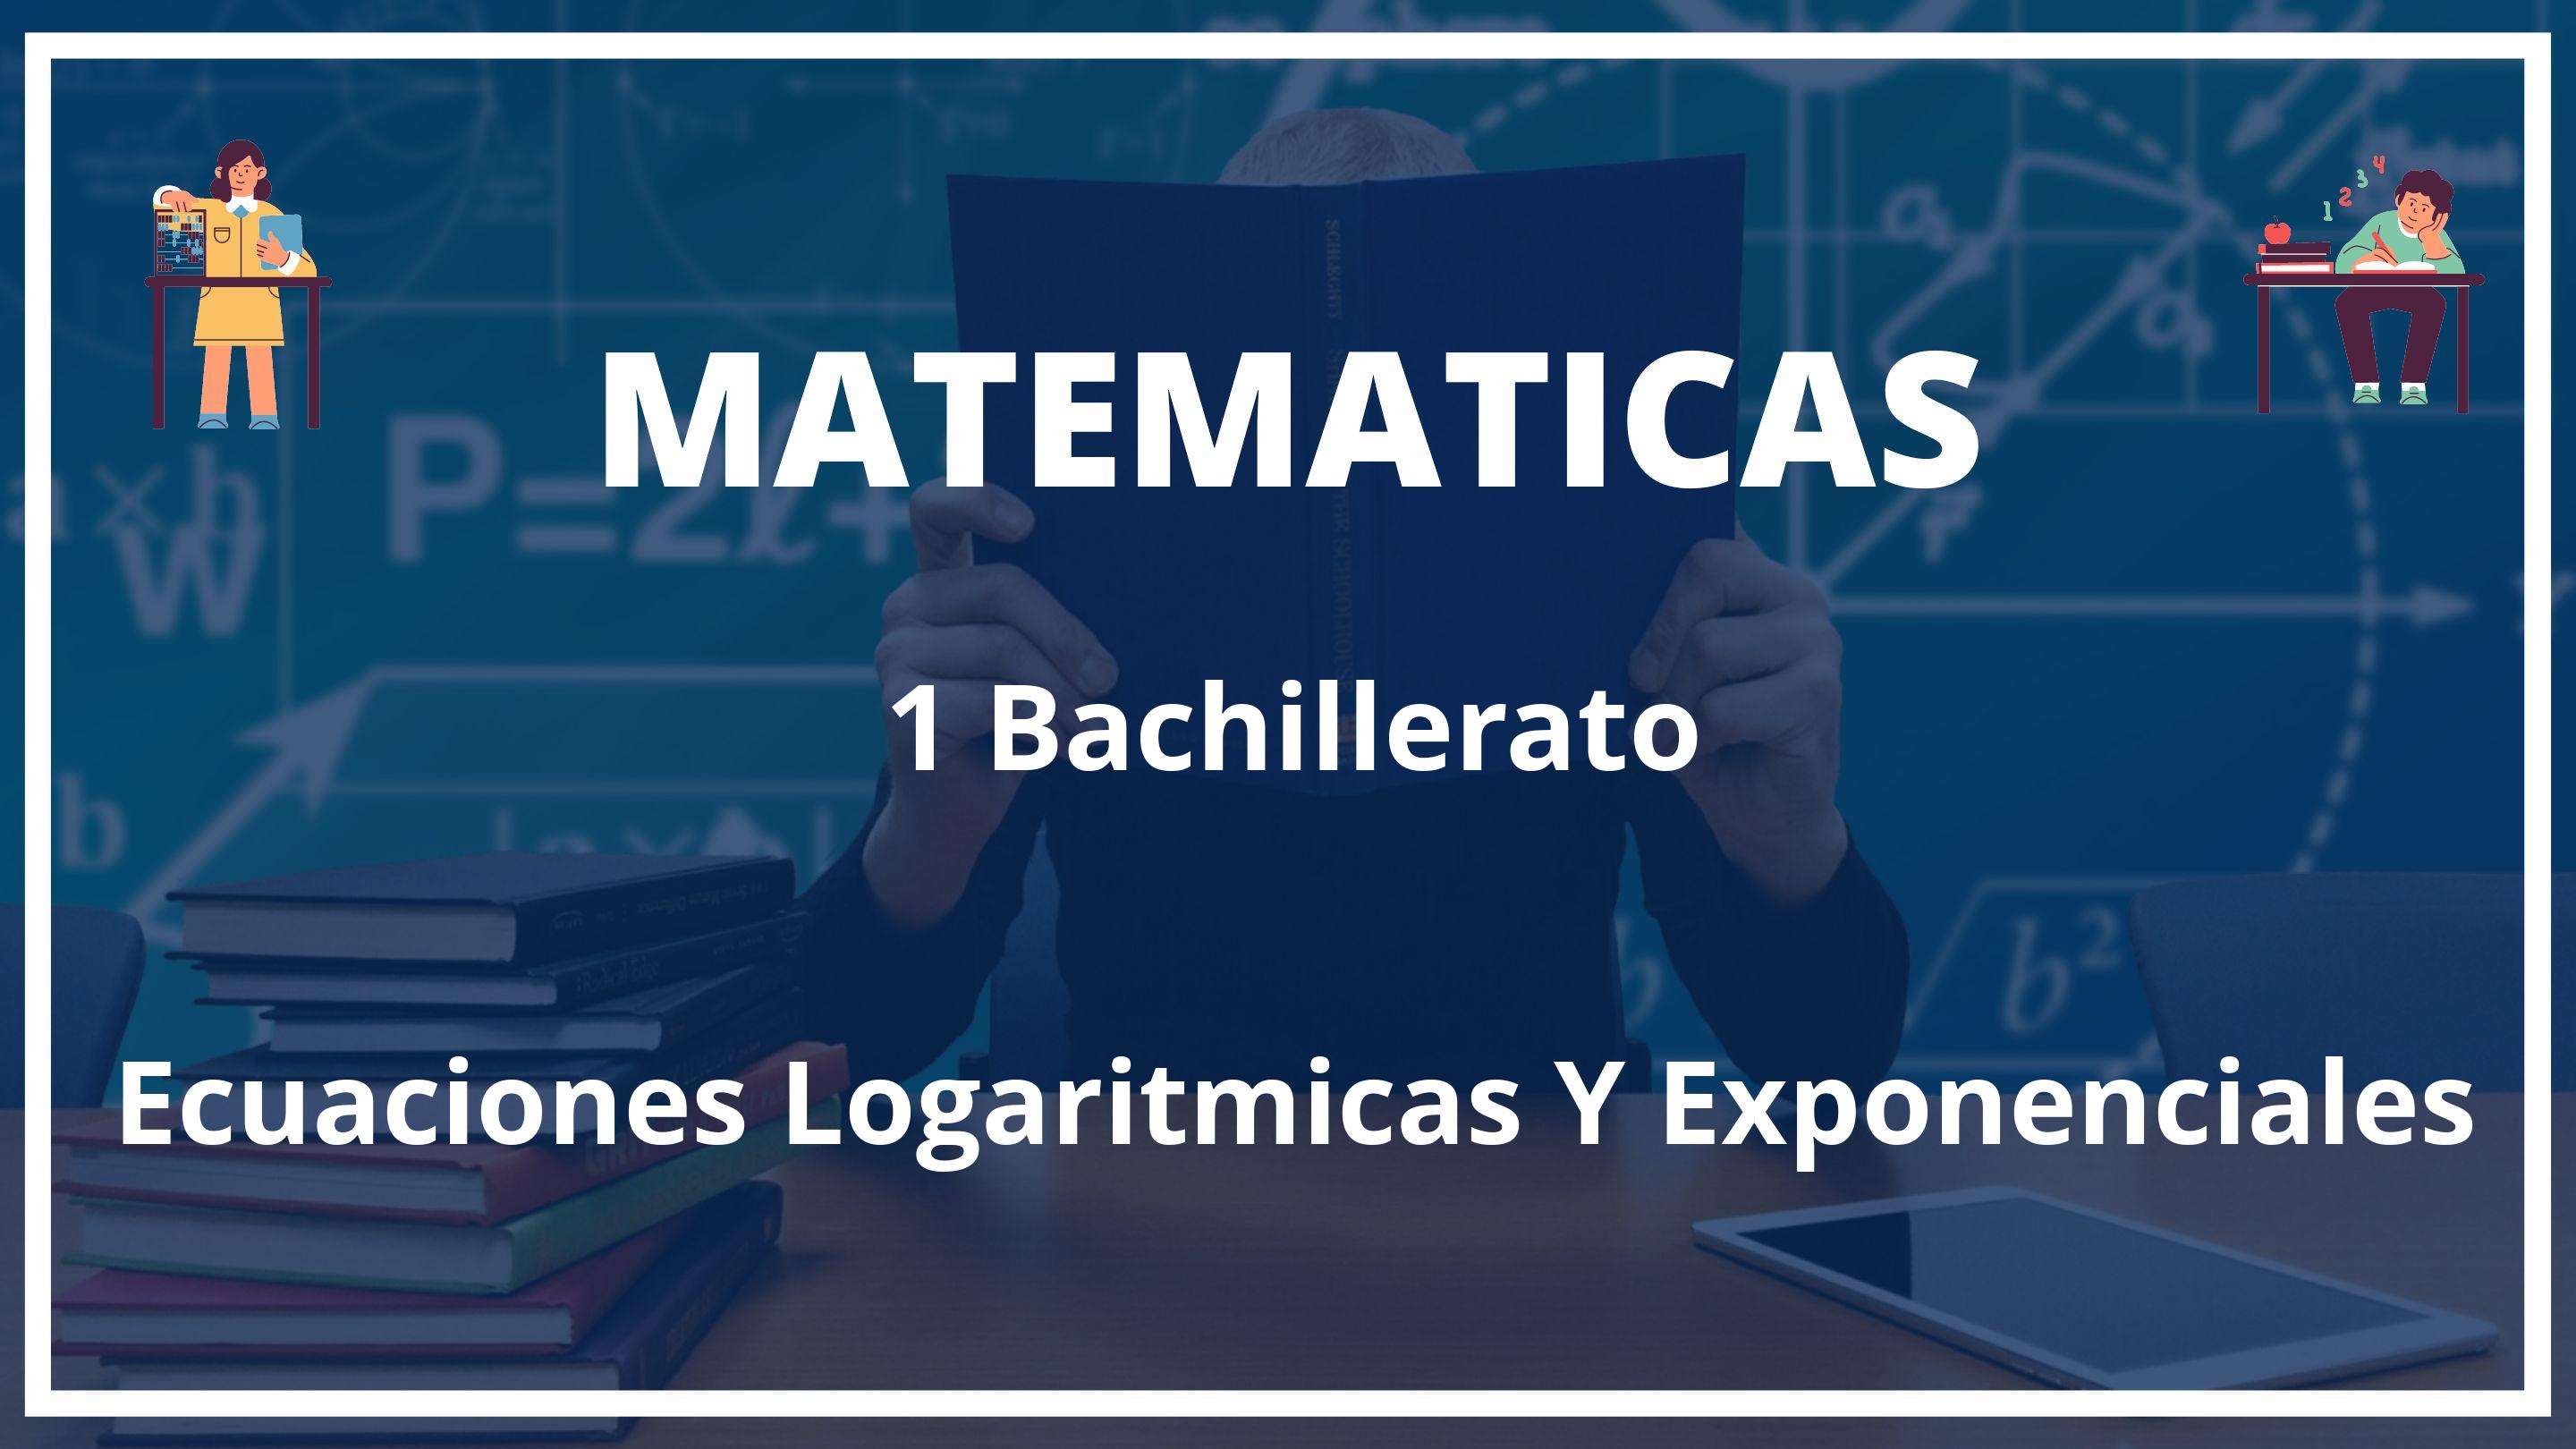 Ecuaciones Logaritmicas Y Exponenciales 1 Bachillerato